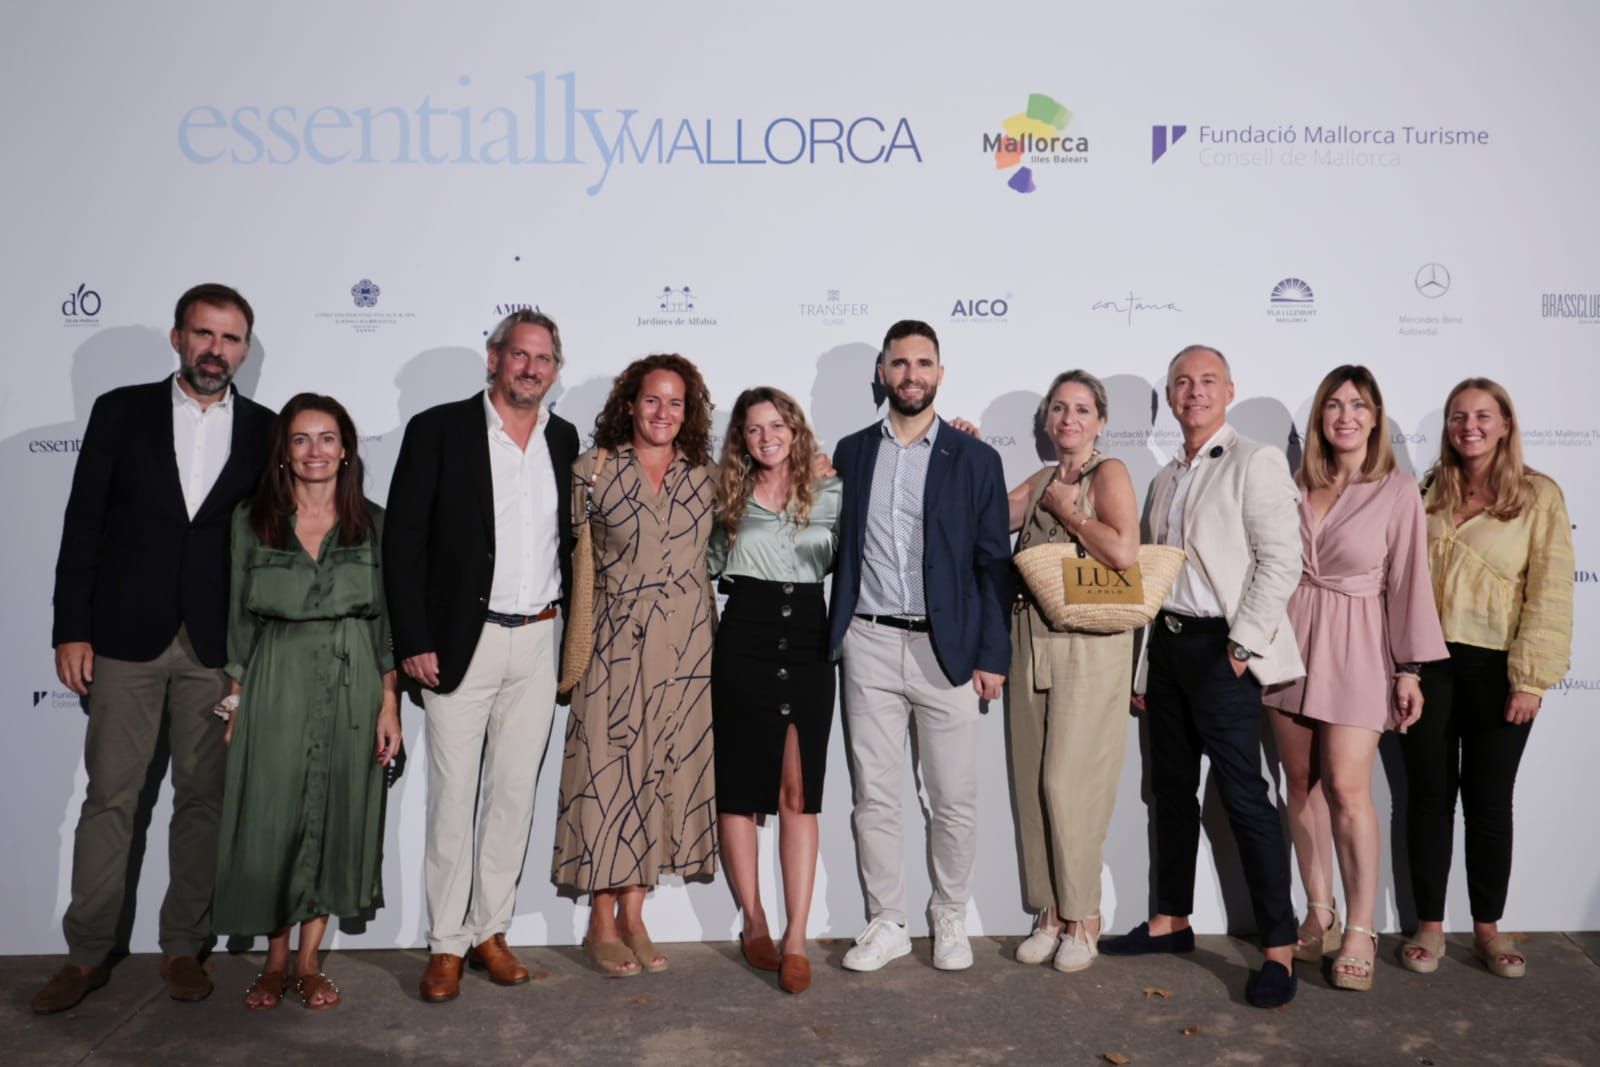 Premios Essentially Mallorca